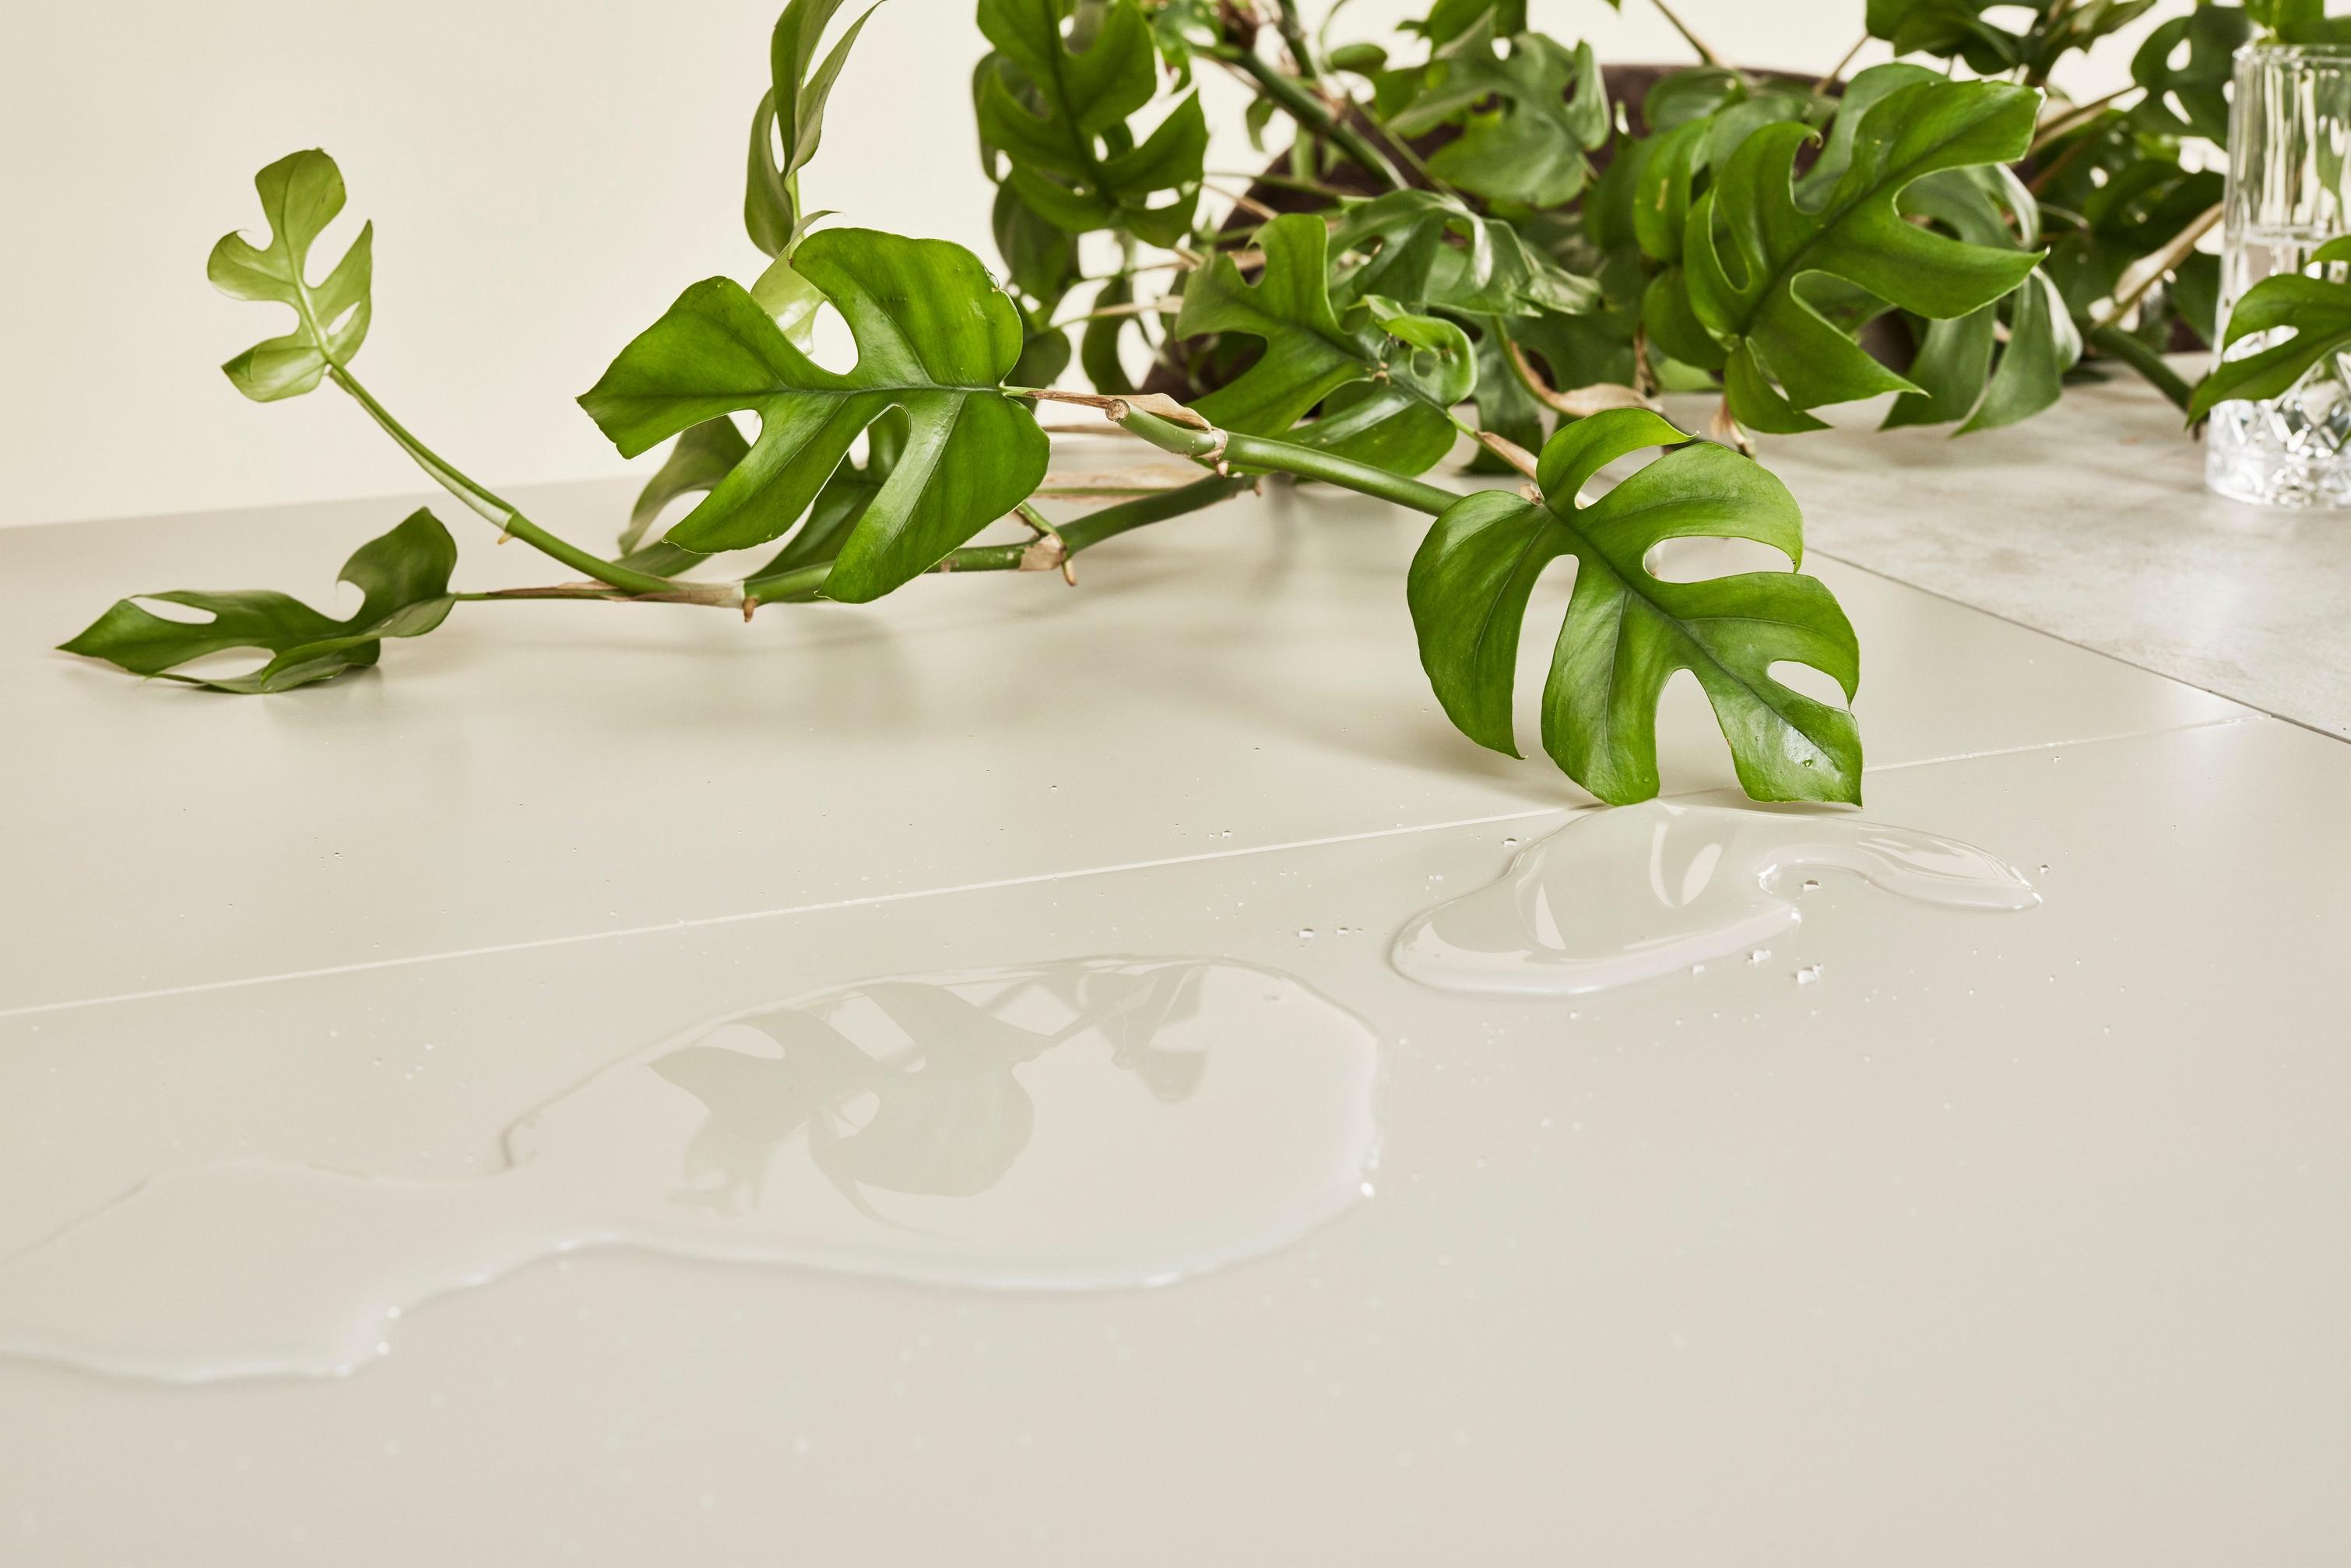 Monstera verde sobre mesa con superficie lacada, con vertido de agua transparente que refleja las hojas.